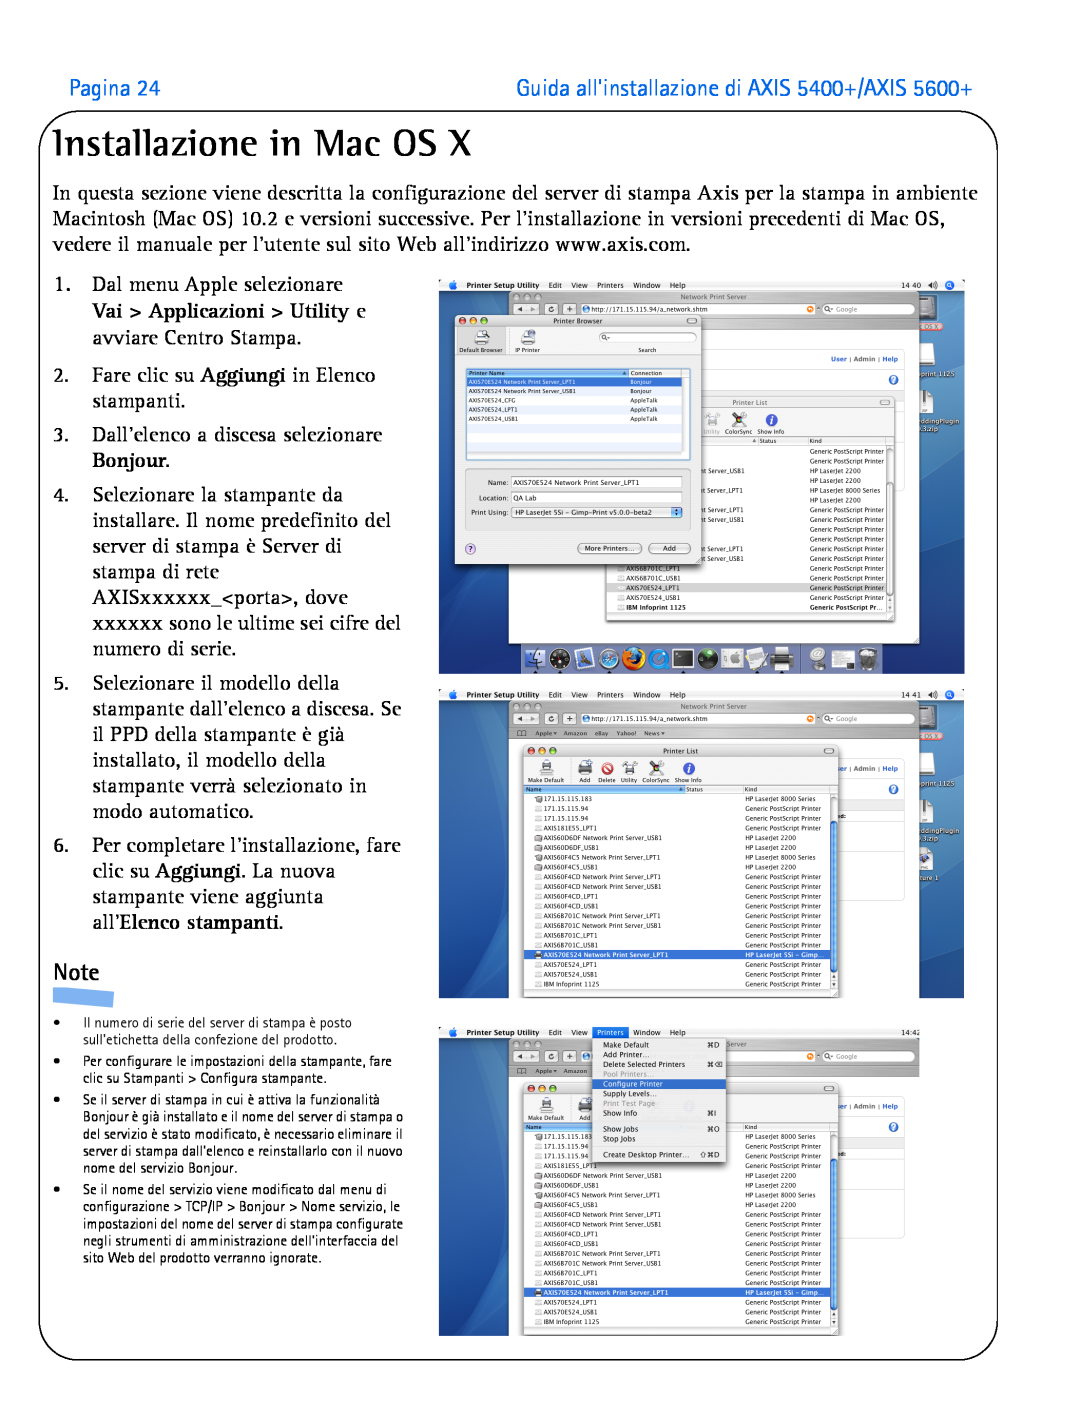 Axis Communications manual Installazione in Mac OS, Pagina, Guida allinstallazione di AXIS 5400+/AXIS 5600+ 